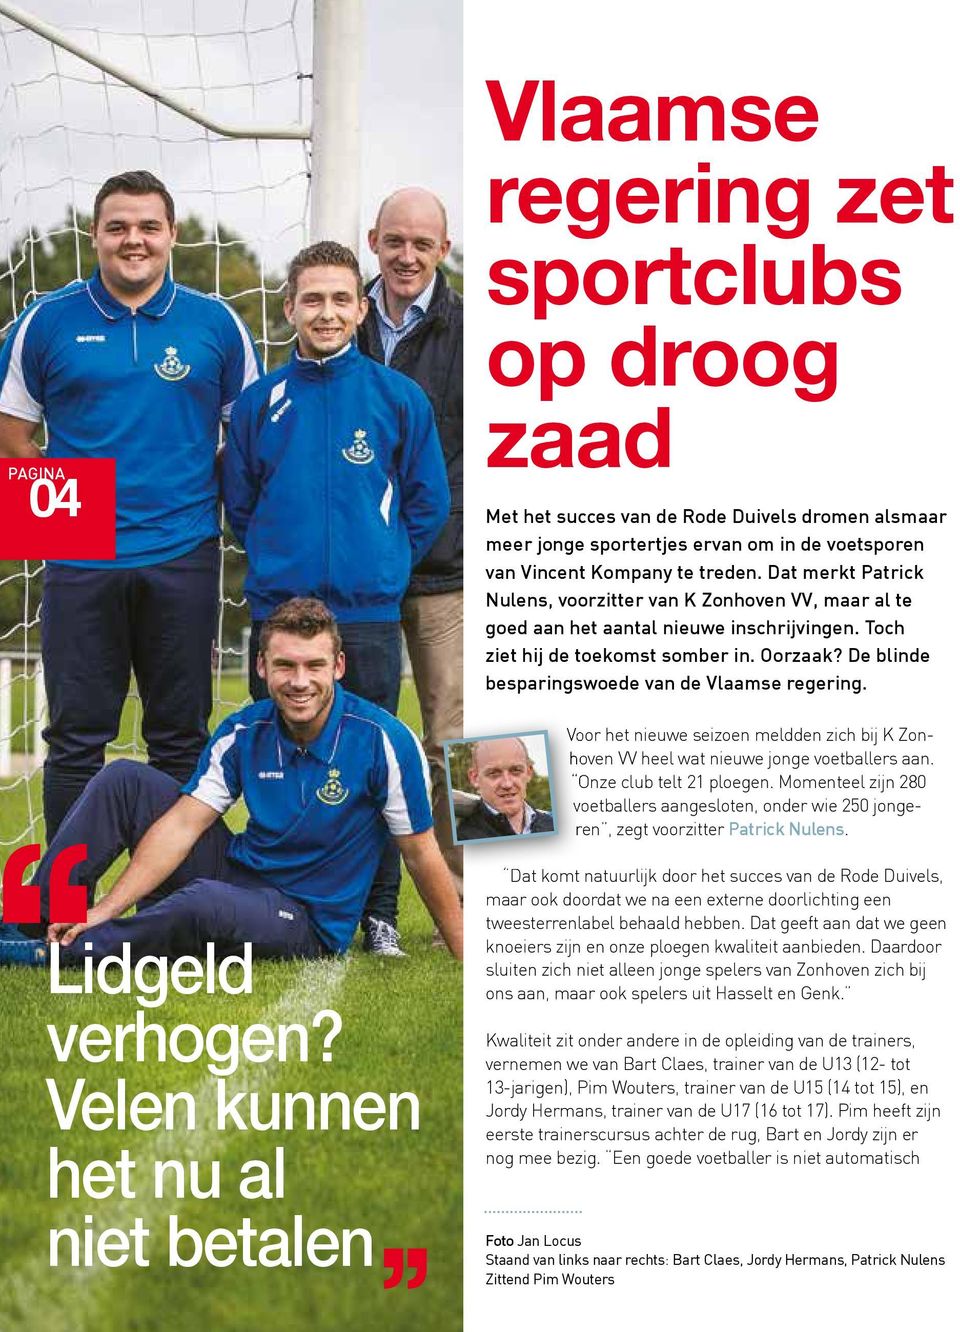 De blinde besparingswoede van de Vlaamse regering. Voor het nieuwe seizoen meldden zich bij K Zonhoven VV heel wat nieuwe jonge voetballers aan. Onze club telt 21 ploegen.